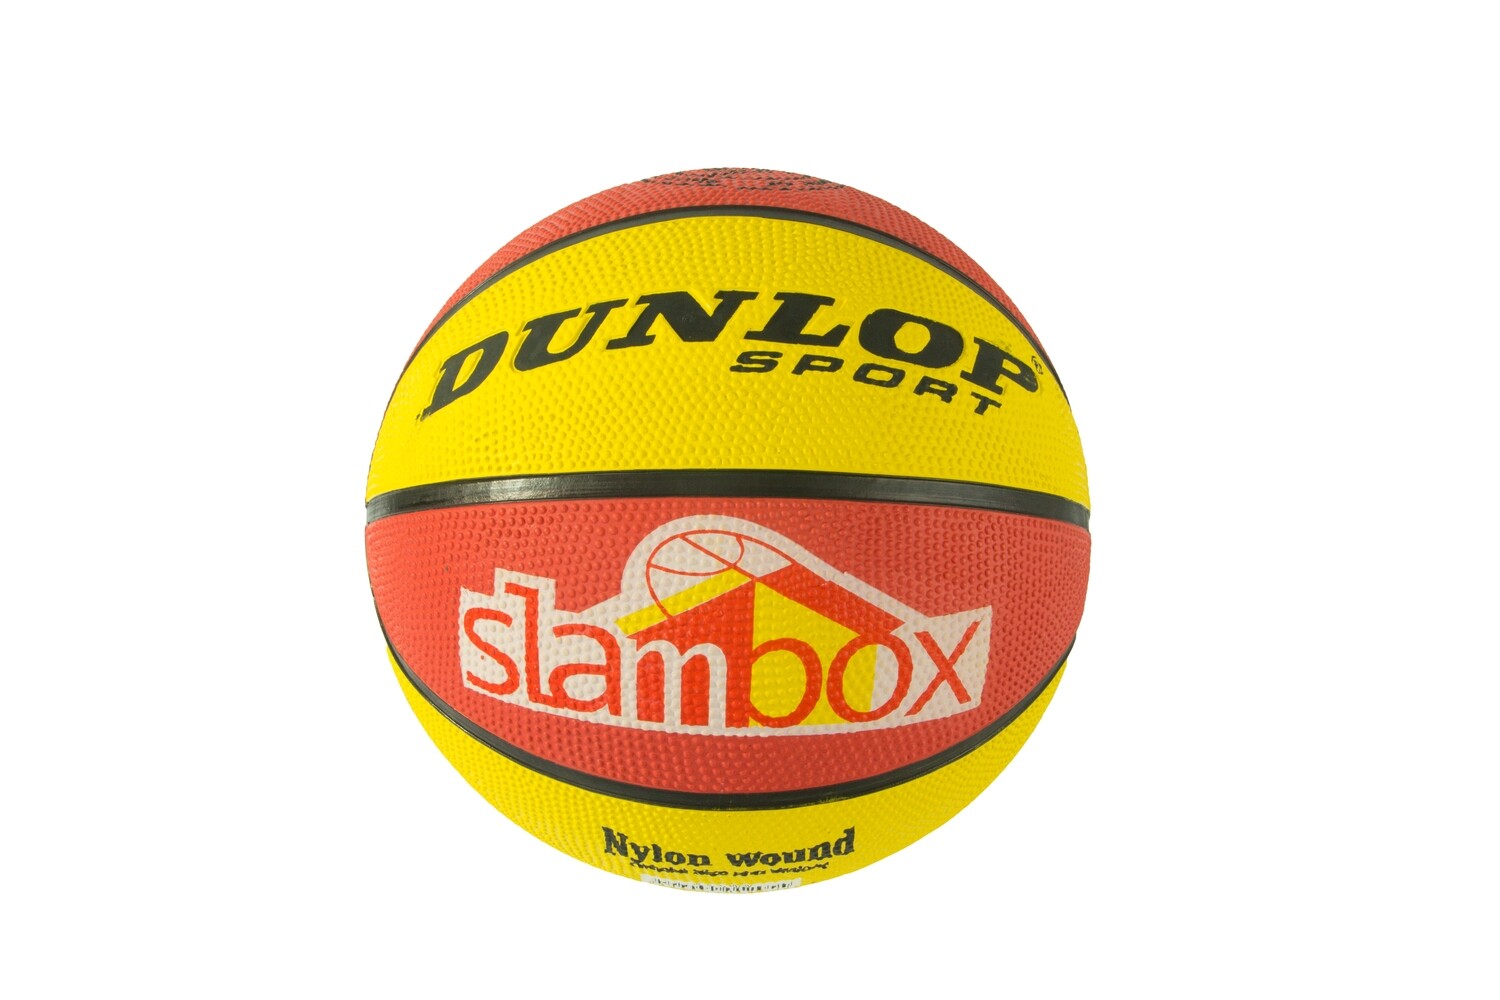 Dunlop Basketball Slambox (Junior)